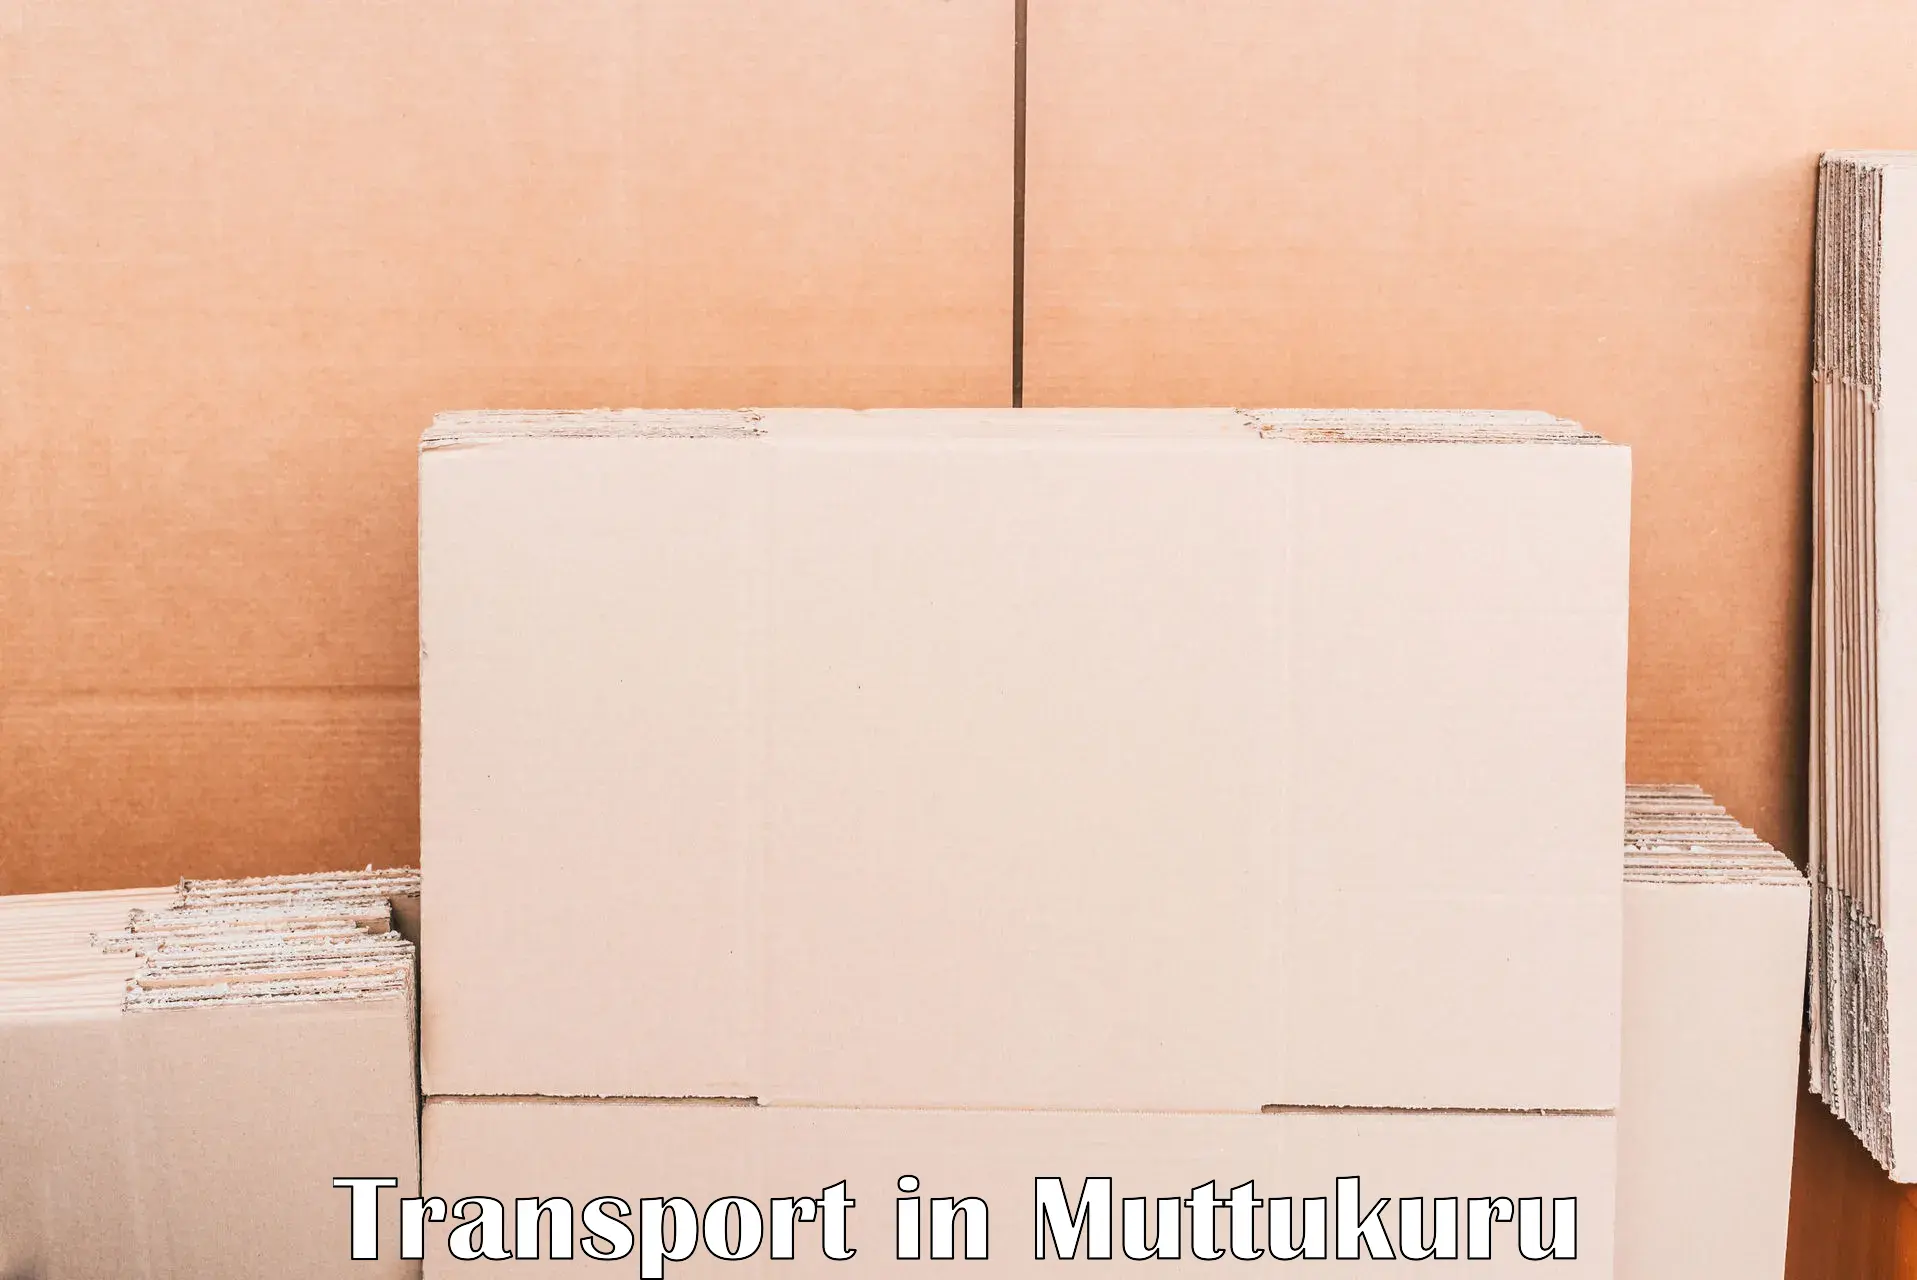 Daily transport service in Muttukuru